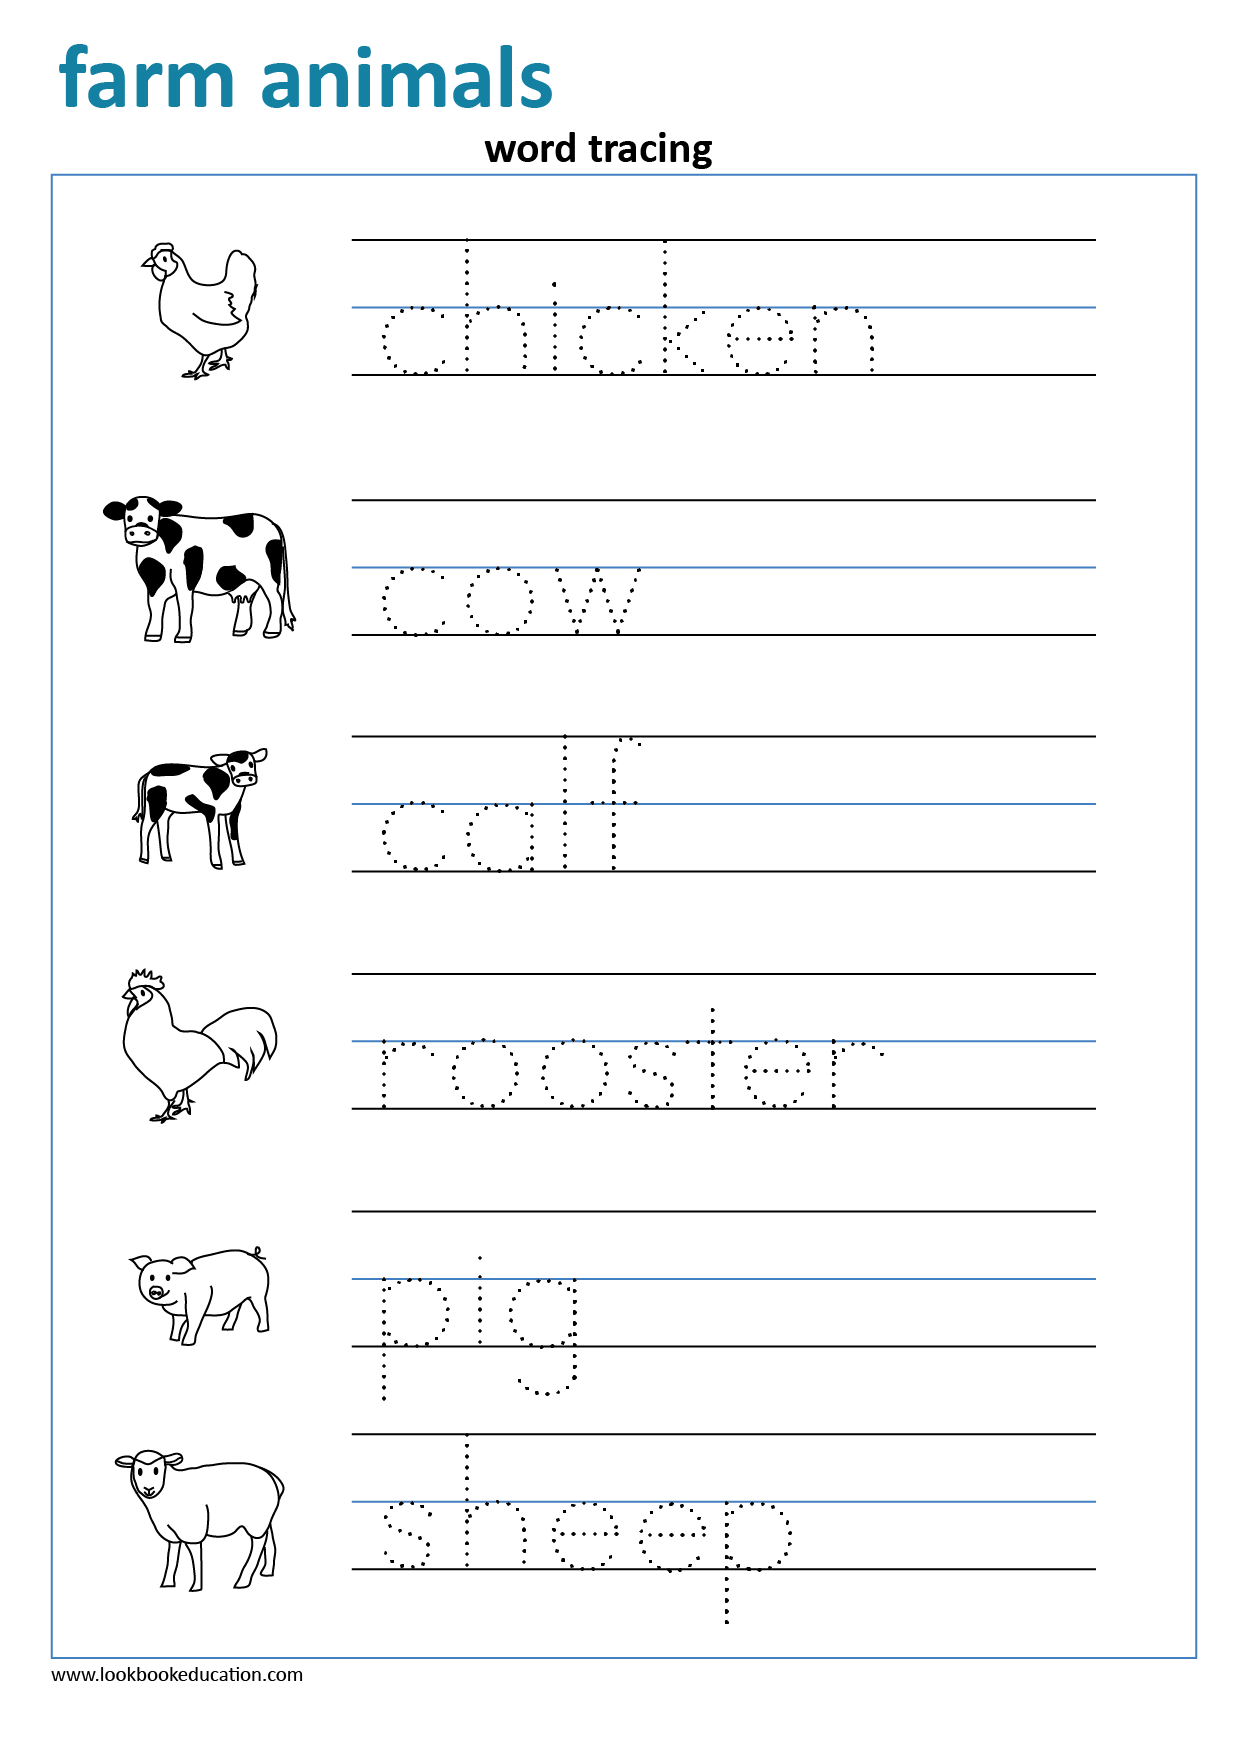 preschool-word-tracing-worksheets-alphabetworksheetsfreecom-name-name-tracing-worksheets-pdf